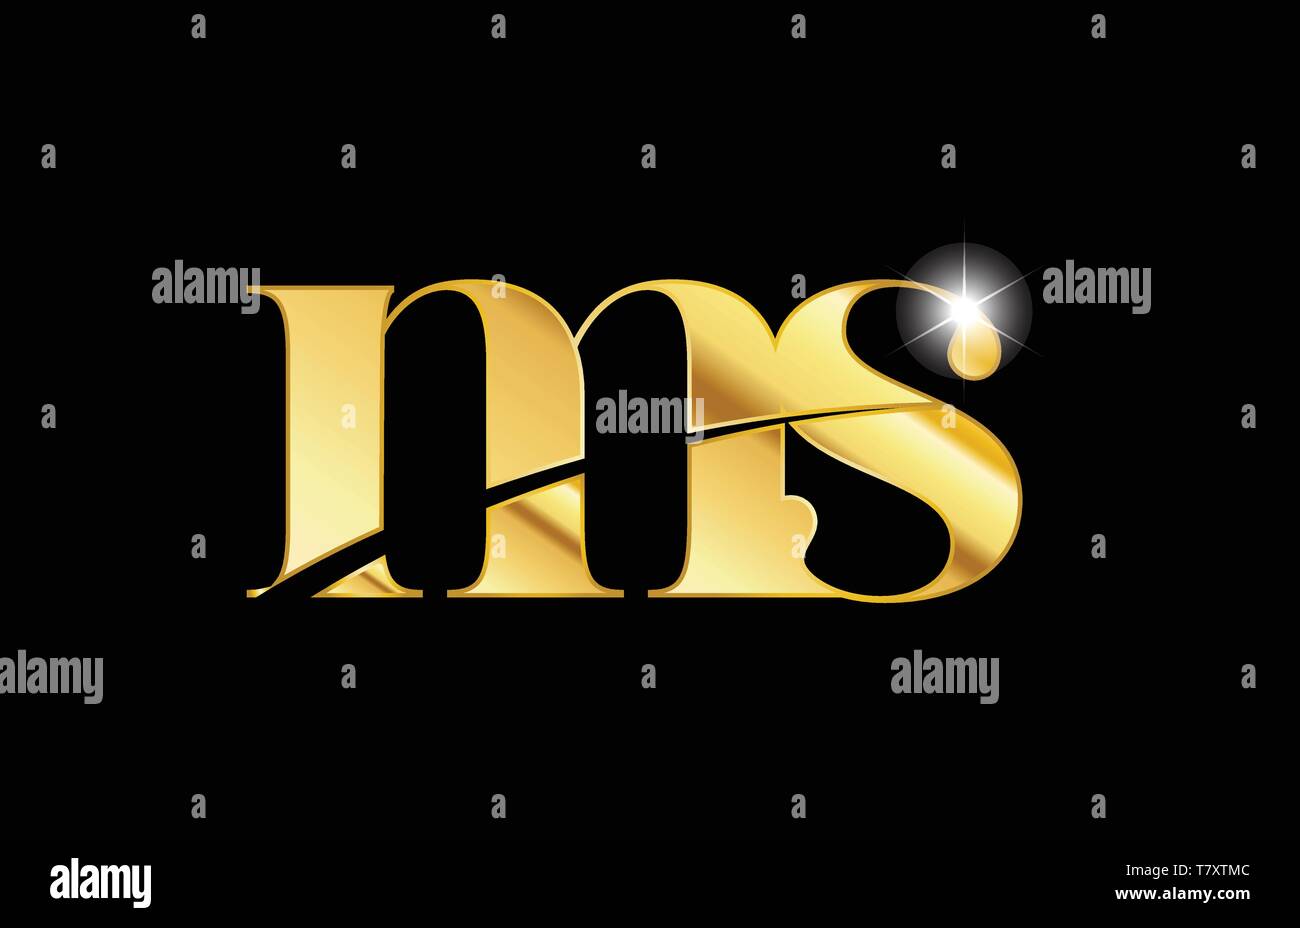 Gold Metall Metallische Buchstaben ms m s logo Icon Design für eine Firma  oder Geschäft Stock-Vektorgrafik - Alamy